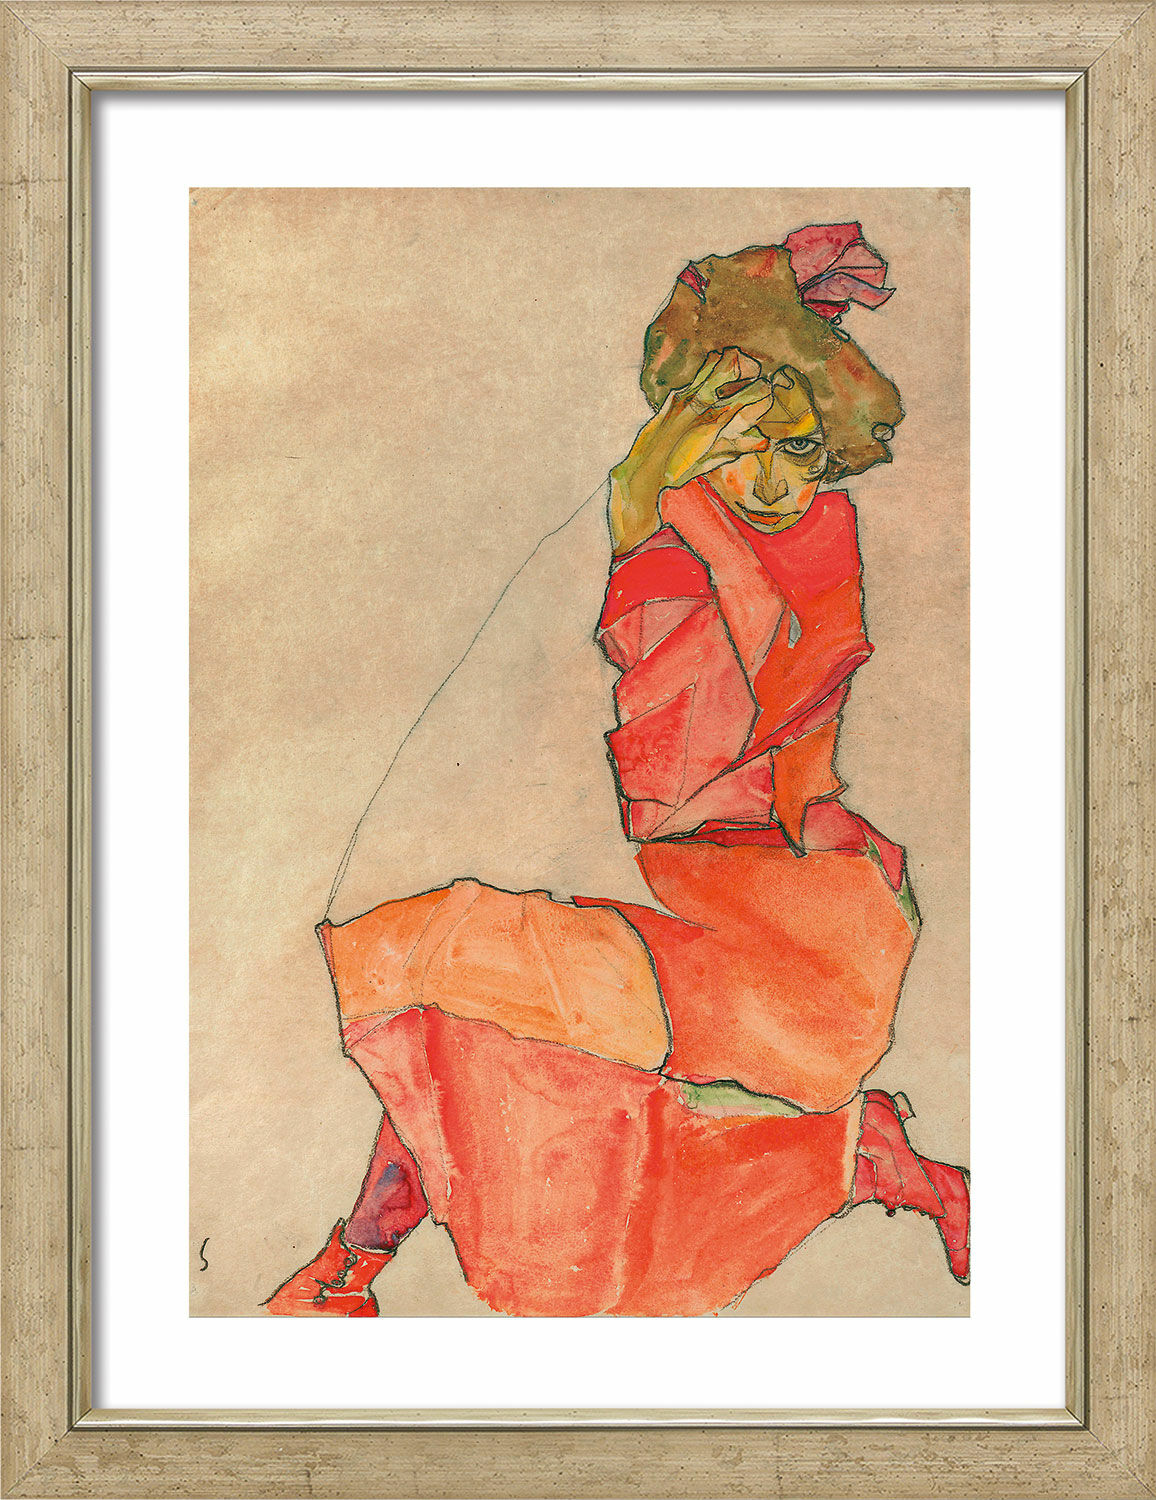 Tableau "Dame agenouillée en robe orange-rouge" (1910), encadré von Egon Schiele